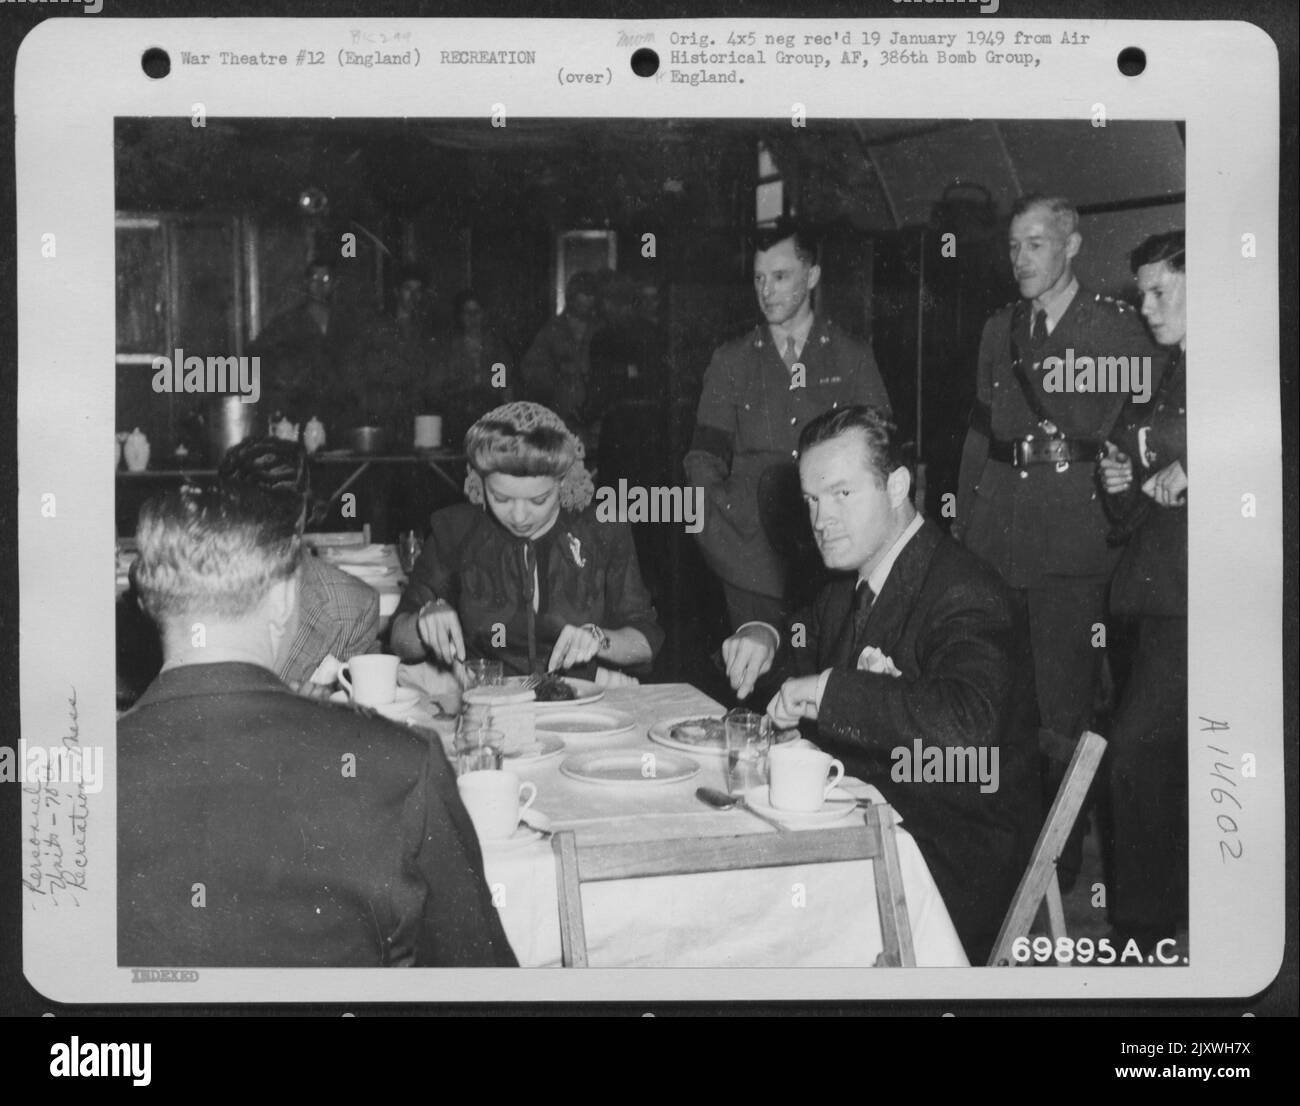 Bob Hope, Frances Langford et The Show troupe apprécient Un repas de GI dans le mess Hall du Groupe de service 70th lors de leur visite à la base le 2 juillet 1944. Angleterre. Banque D'Images